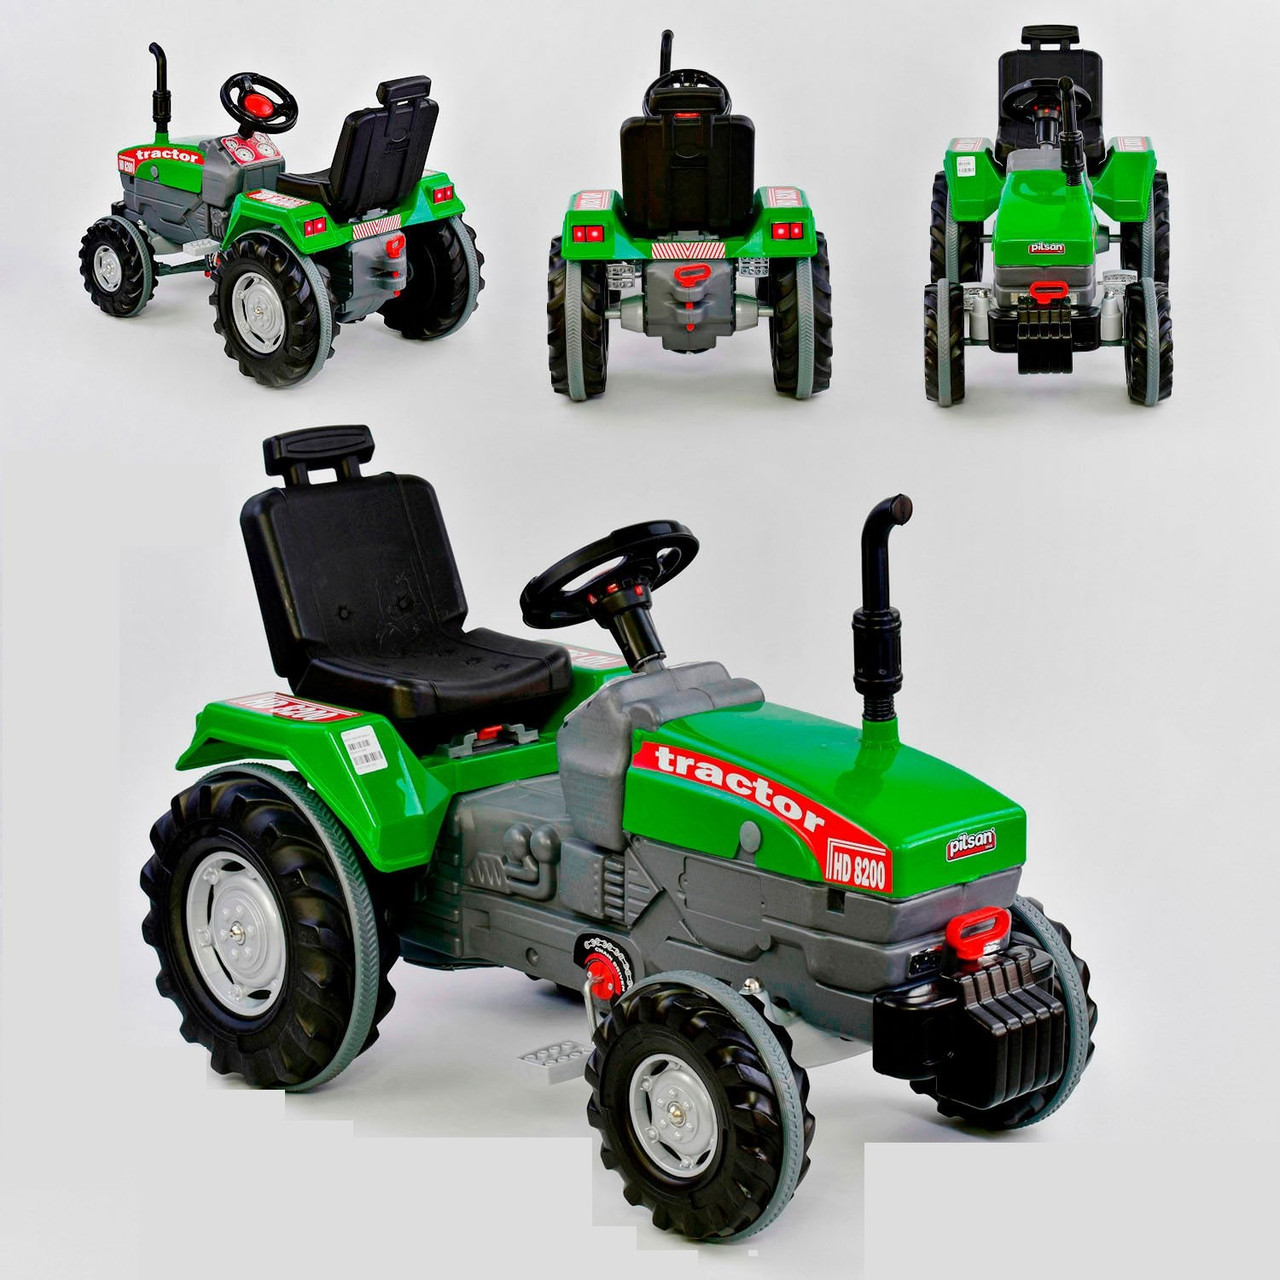 Педальный трактор Pilsan 07-294 прорезиненные колеса, регулируемое сидение, клаксон на руле, цвет зеленый